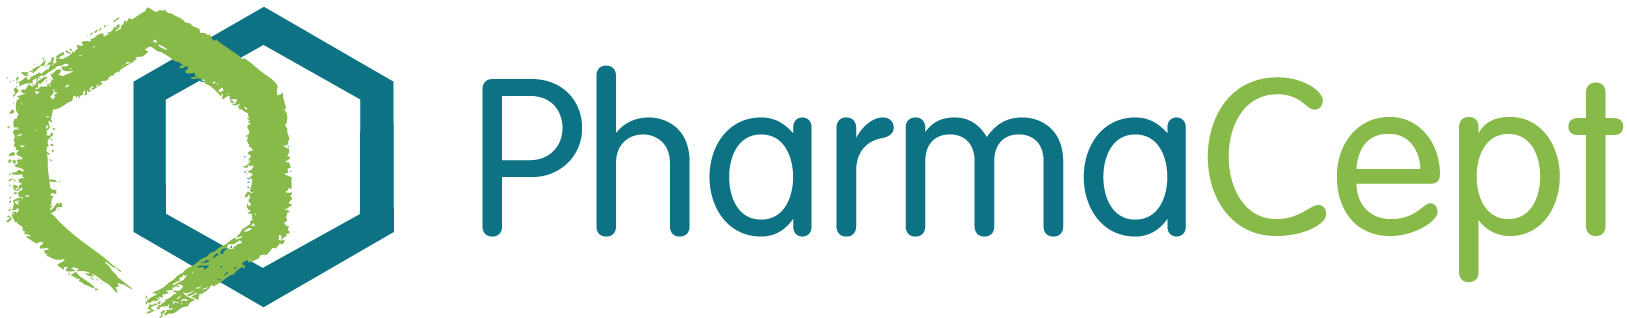 Pharmacept Logotype